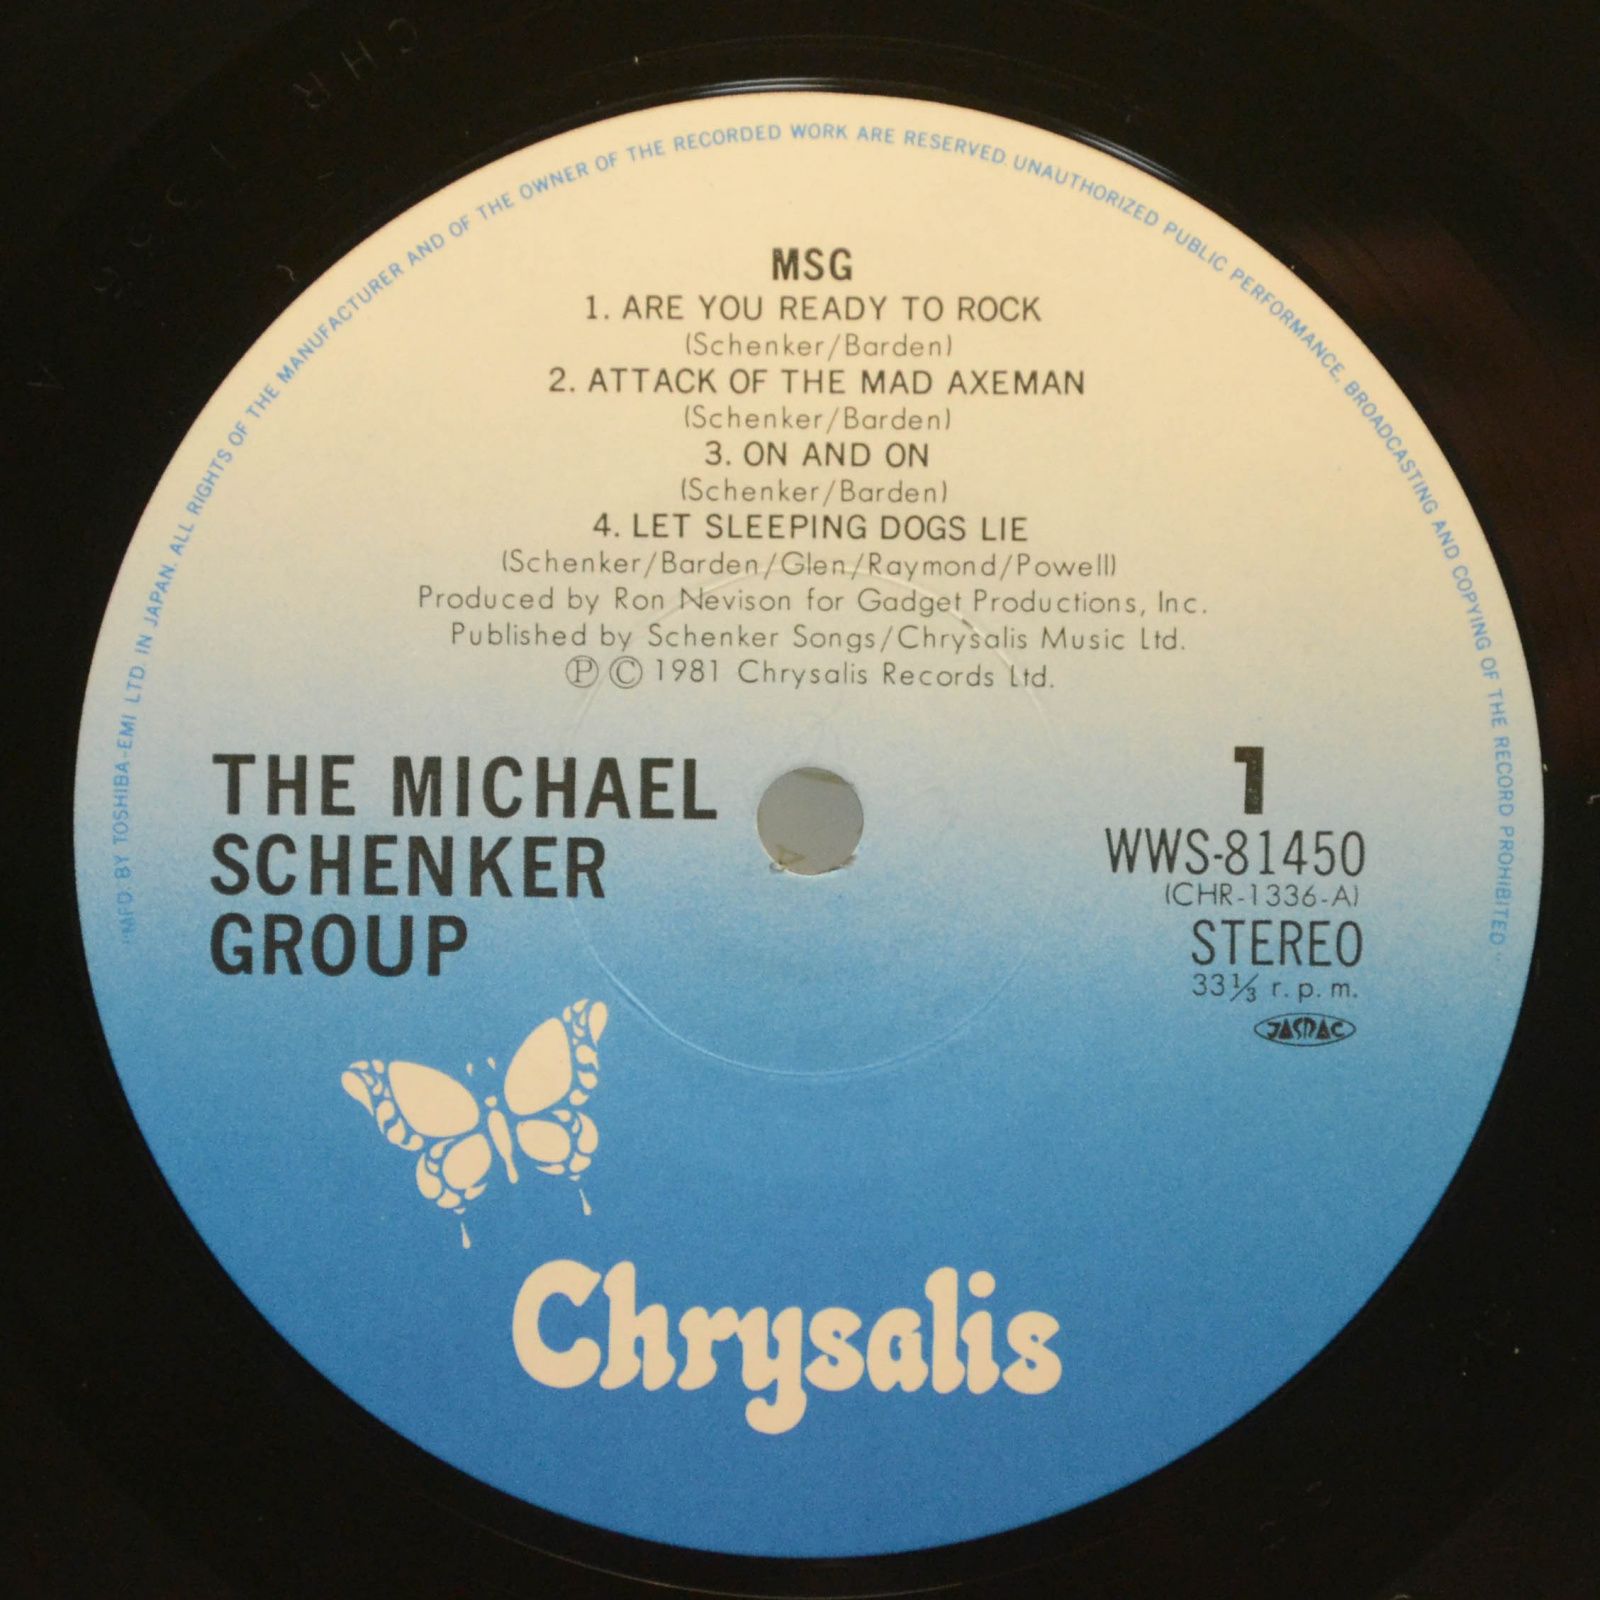 Michael Schenker Group — MSG, 1981